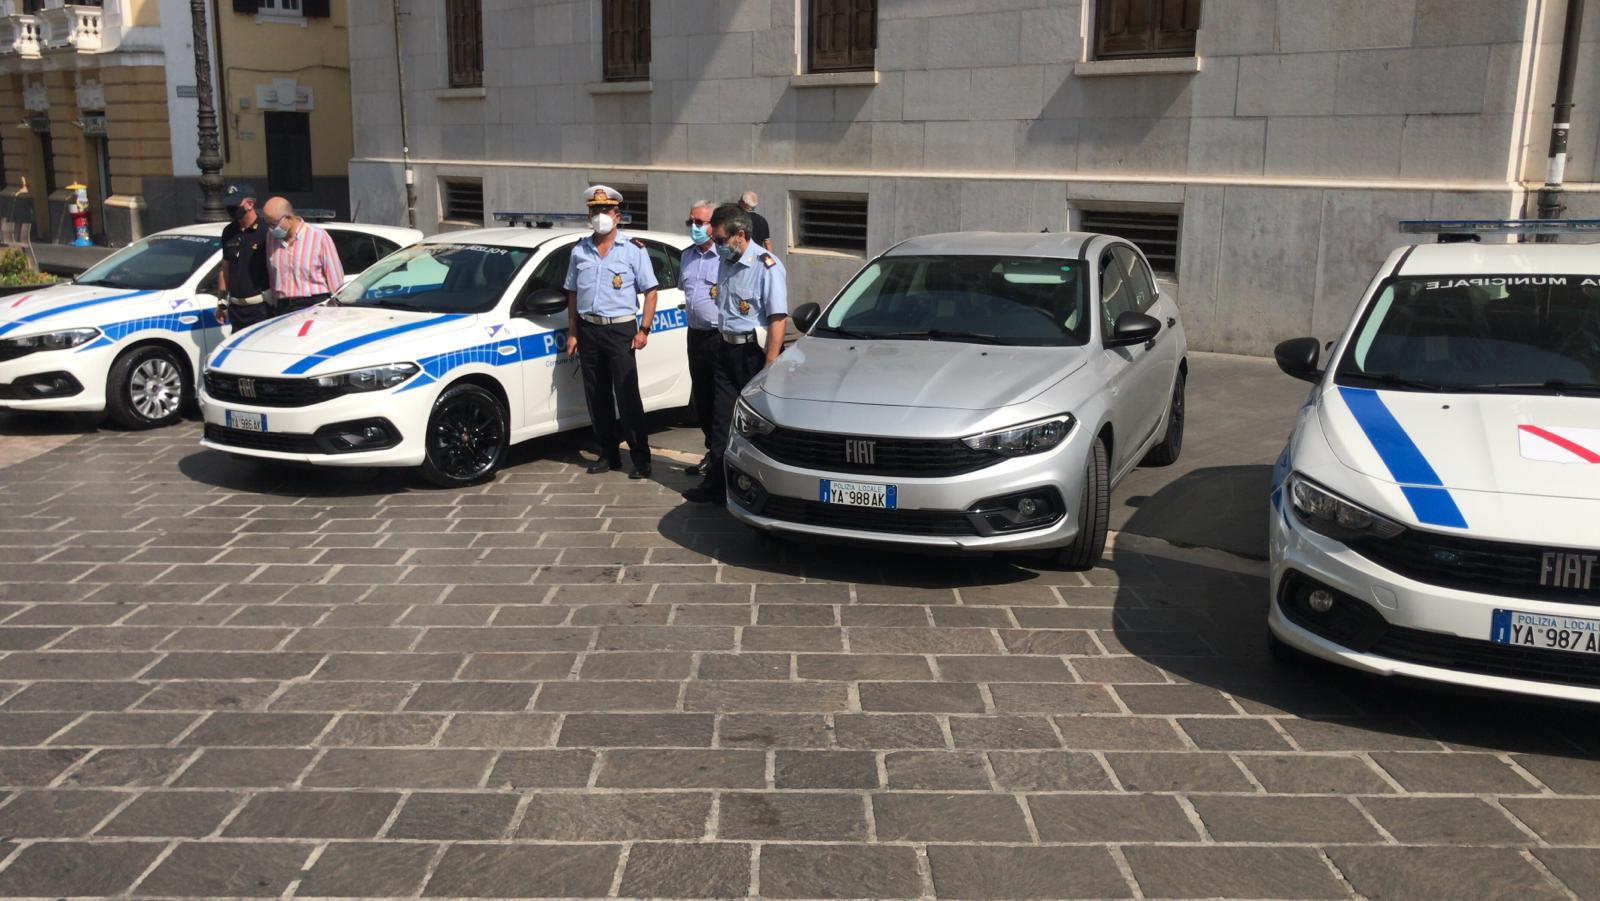 La Municipale di Benevento aggiorna il parco macchine